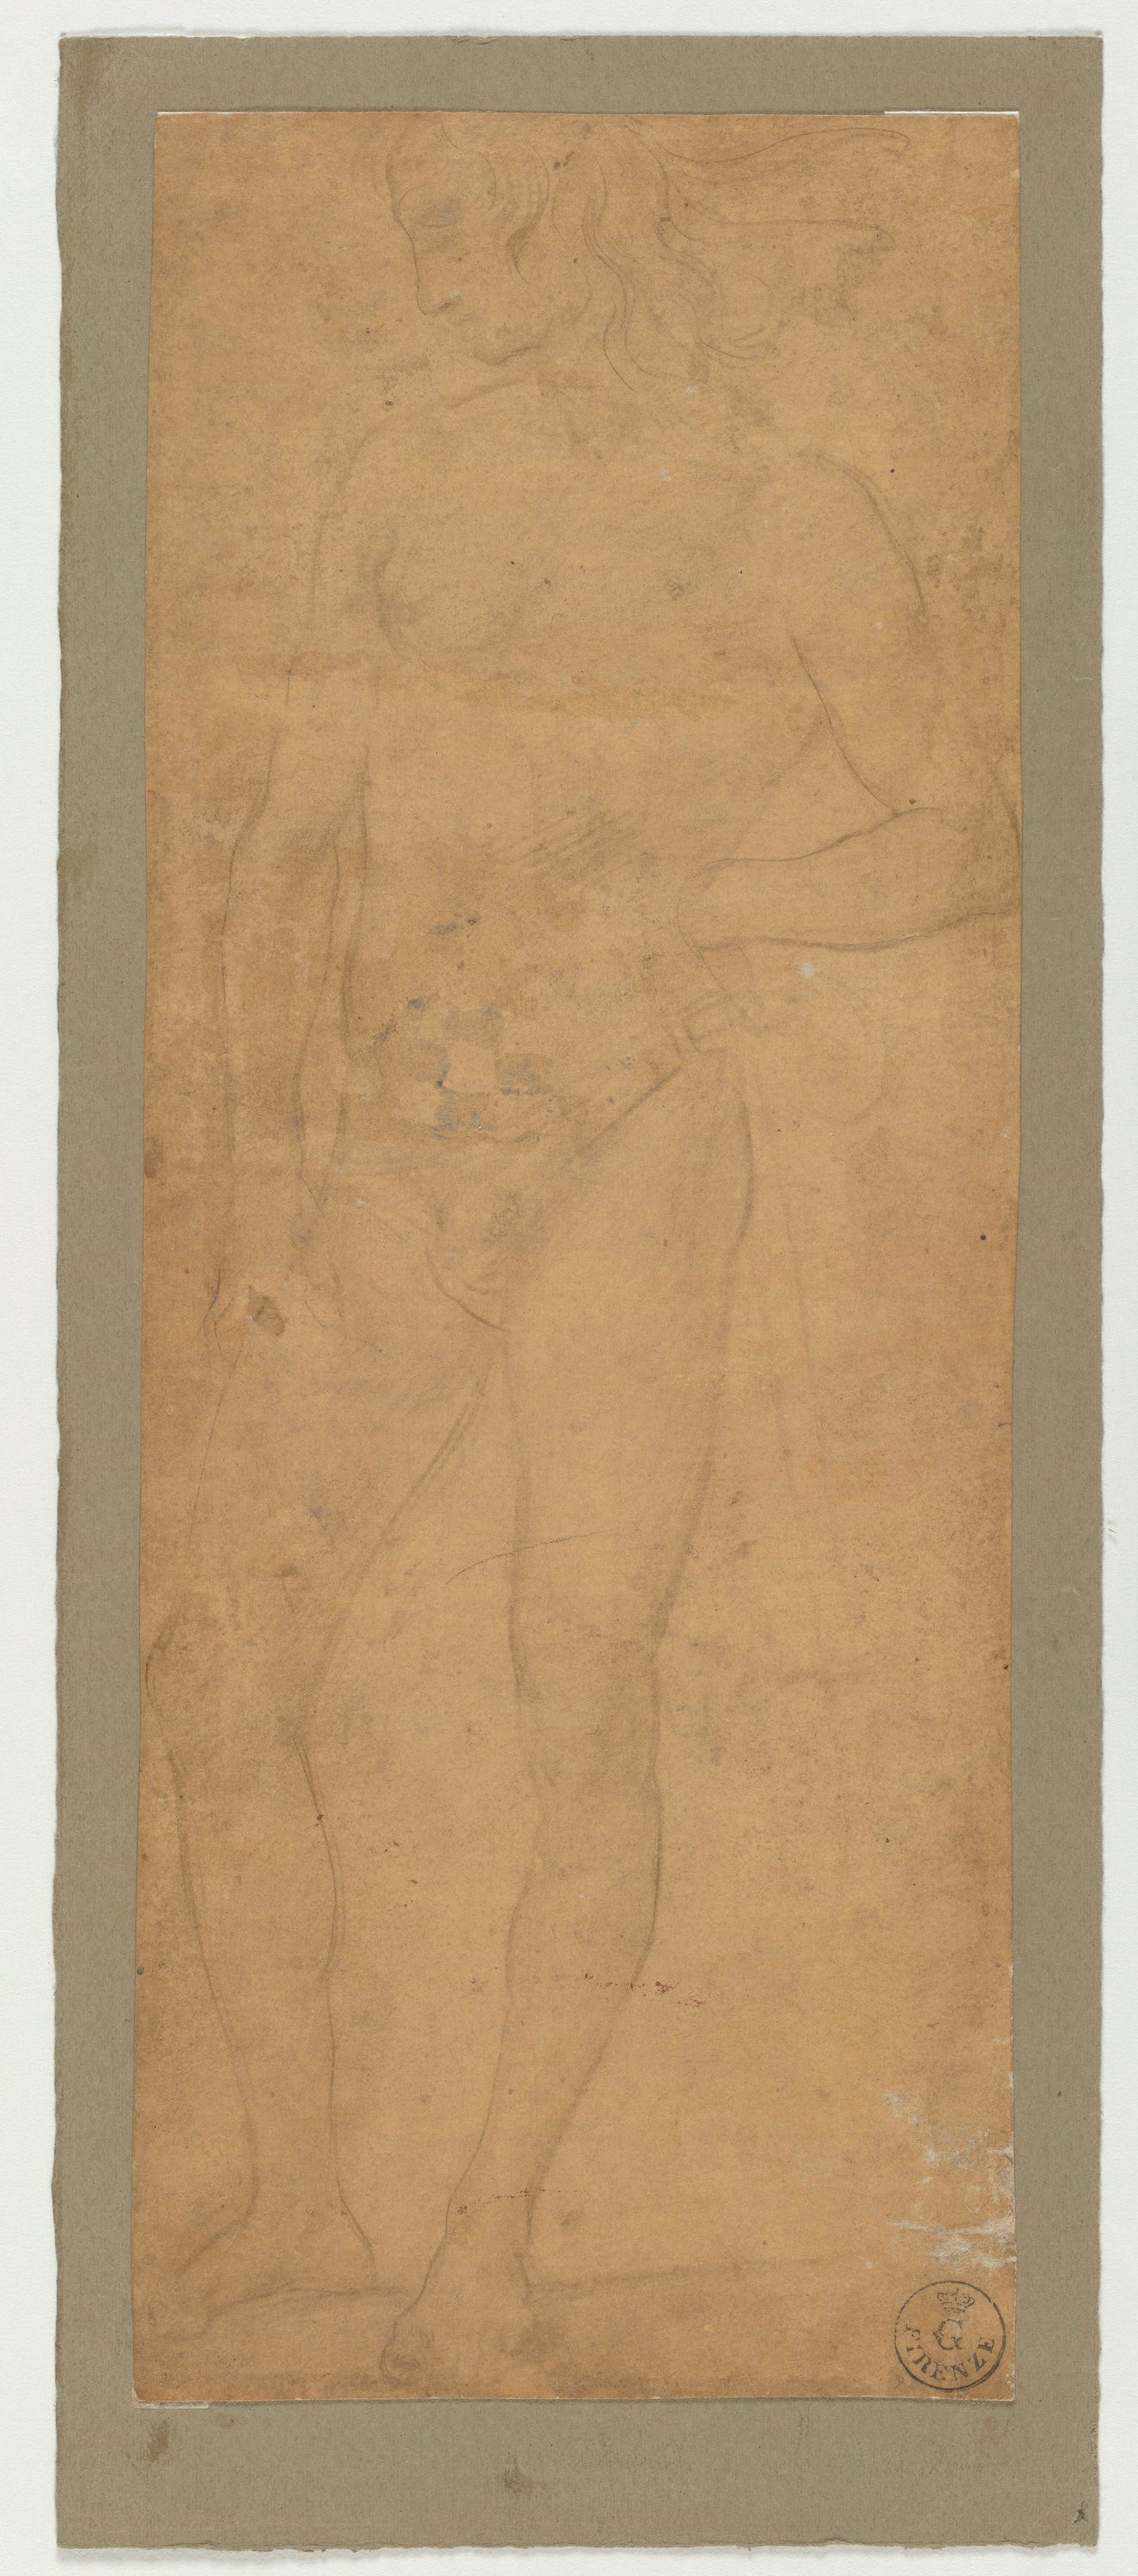 Giovane nudo volto verso sinistra (disegno) di Vannucci Pietro detto Perugino (ultimo quarto XV)